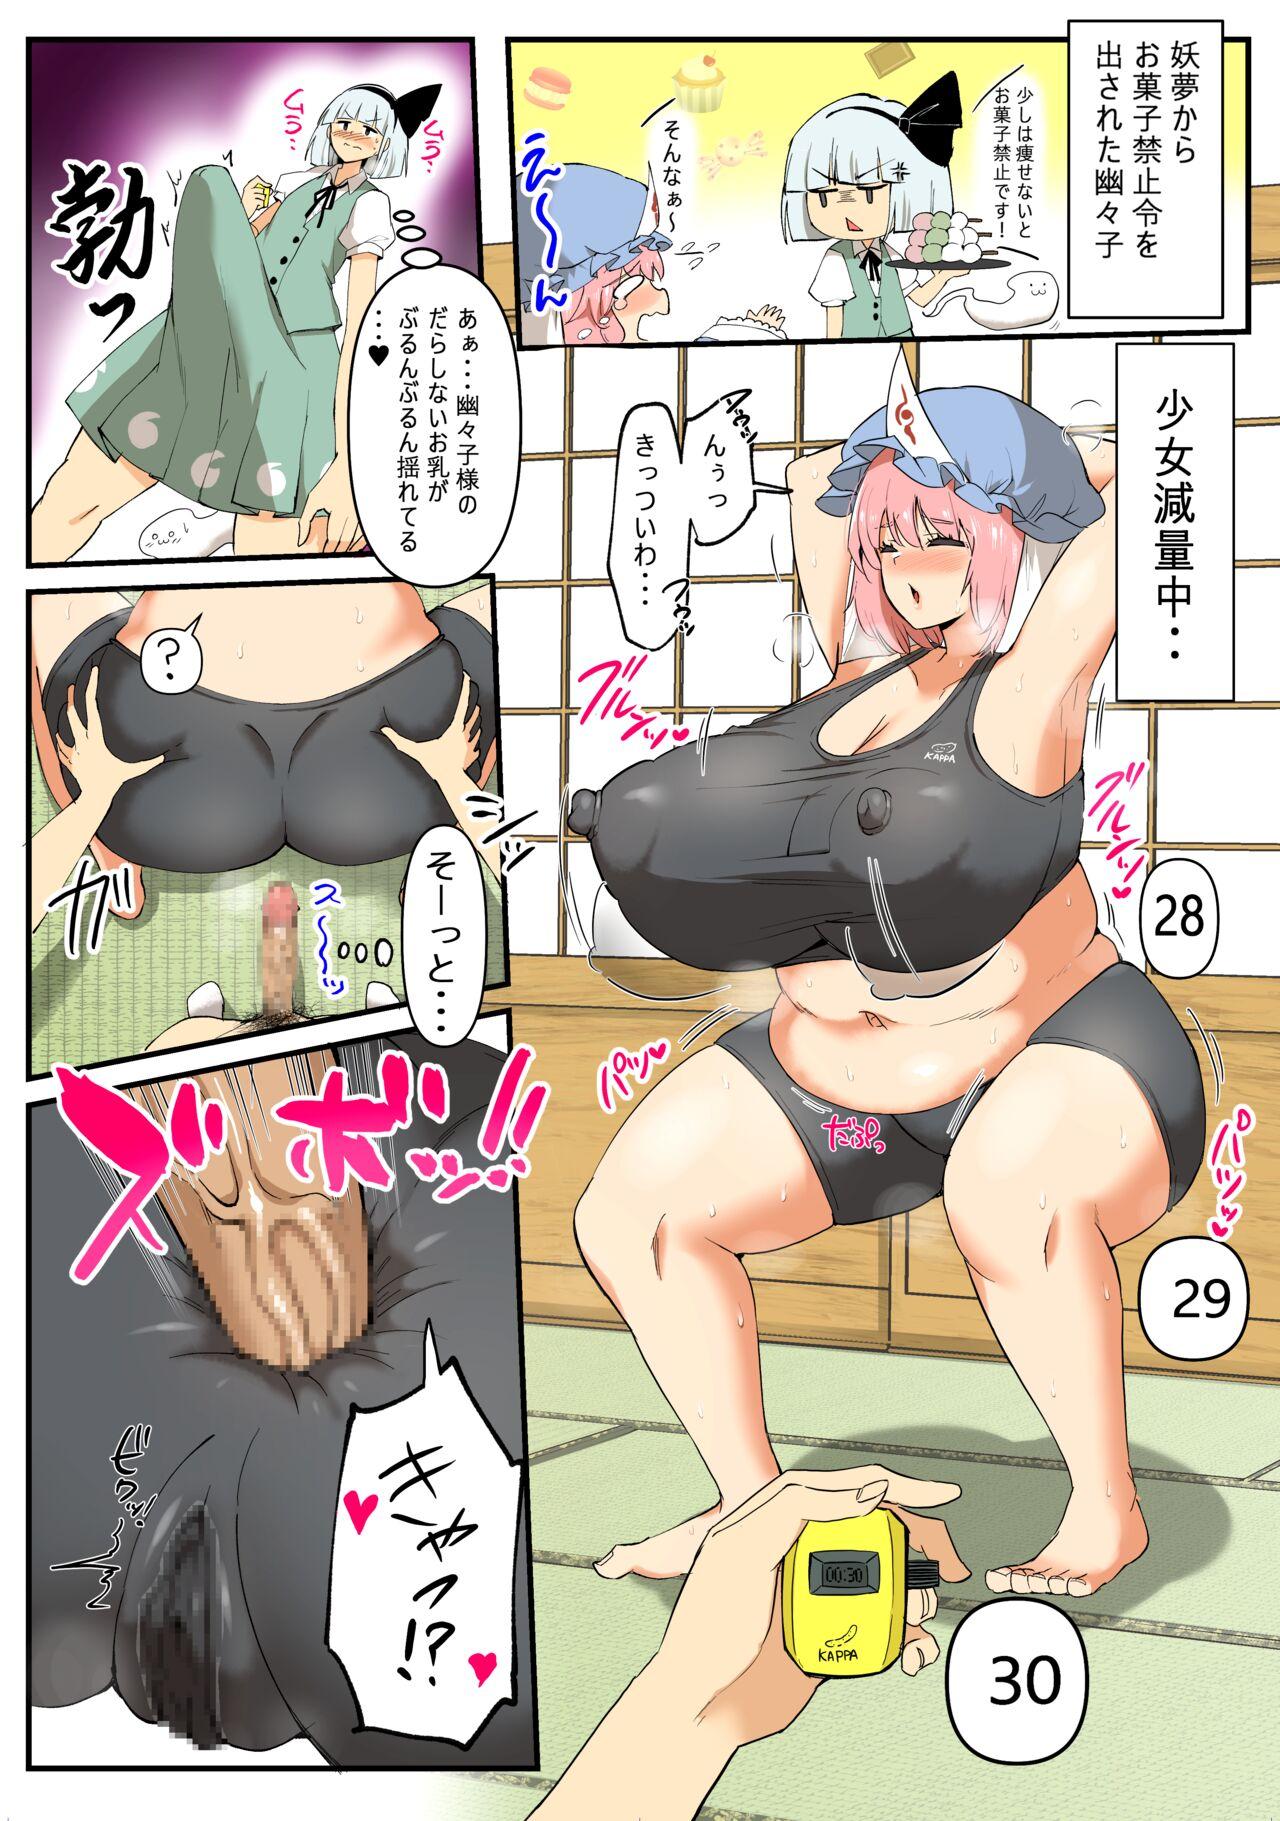 Yuyuko-sama no Diet Sex Manga 1